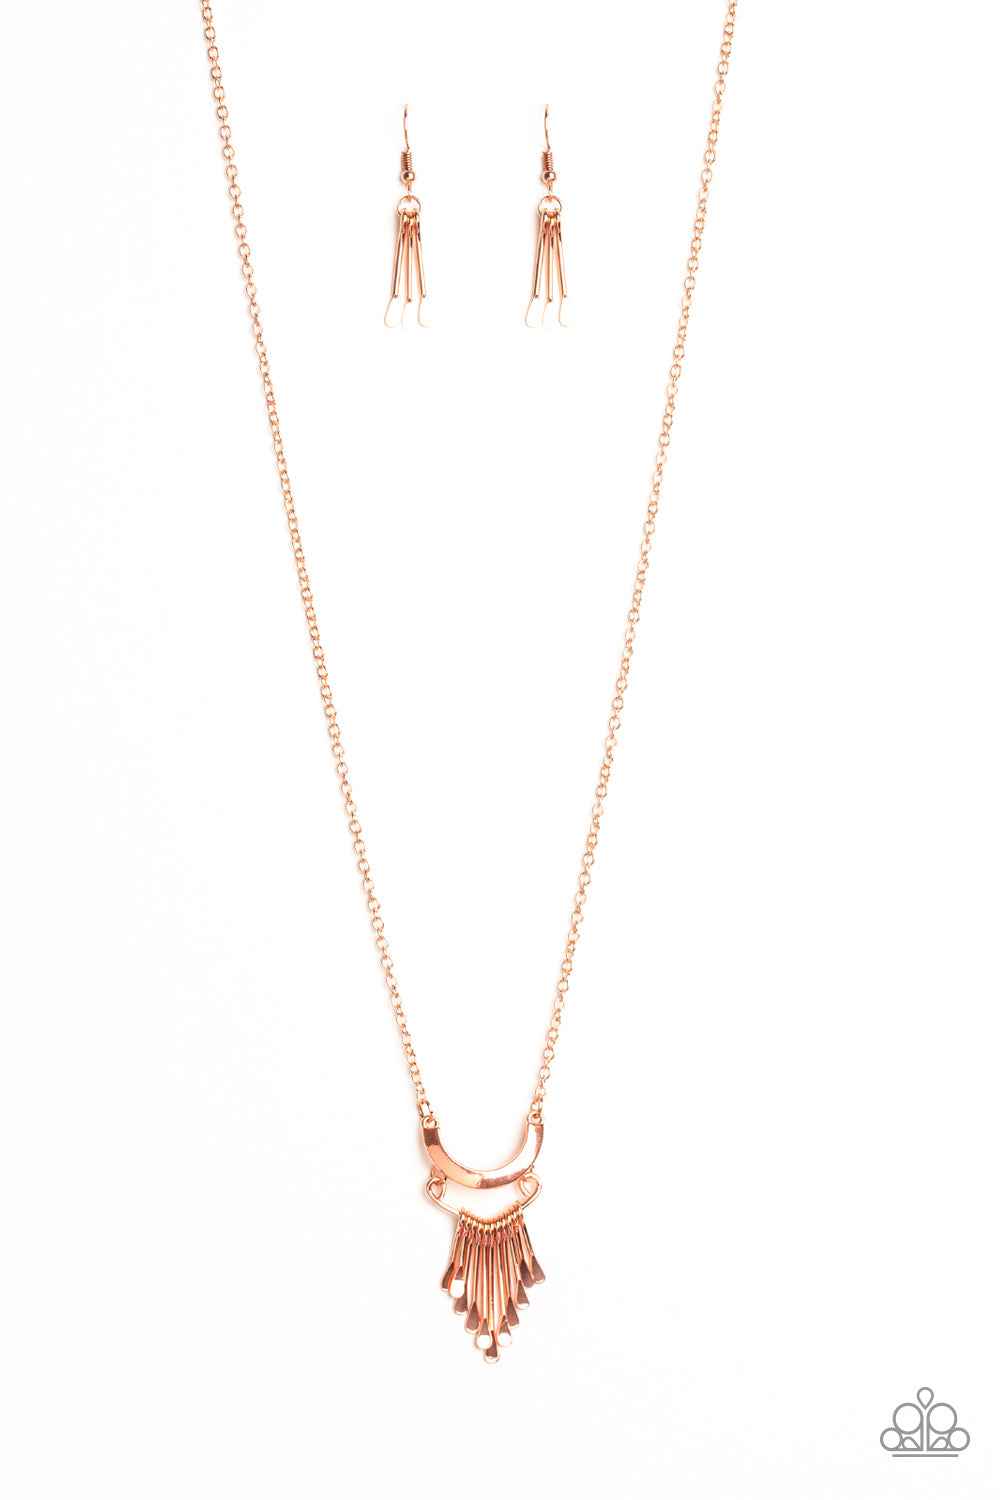 Trendsetting Trinket - Copper Necklace Set - Princess Glam Shop